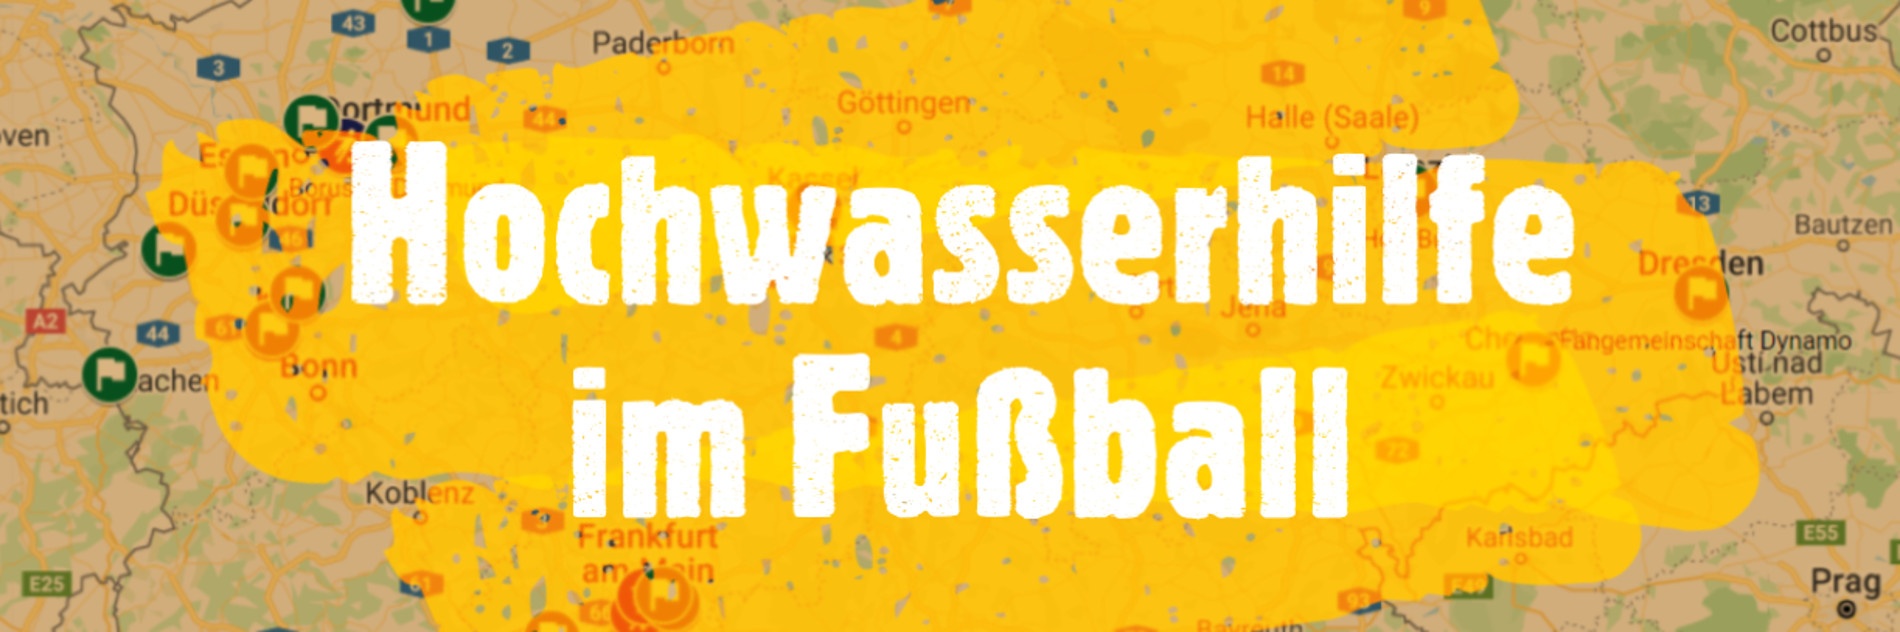 Ein Ausschnitt einer Deutschlandkarte auf dem in weißen Lettern Hochwasserhilfe im Fußball steht.